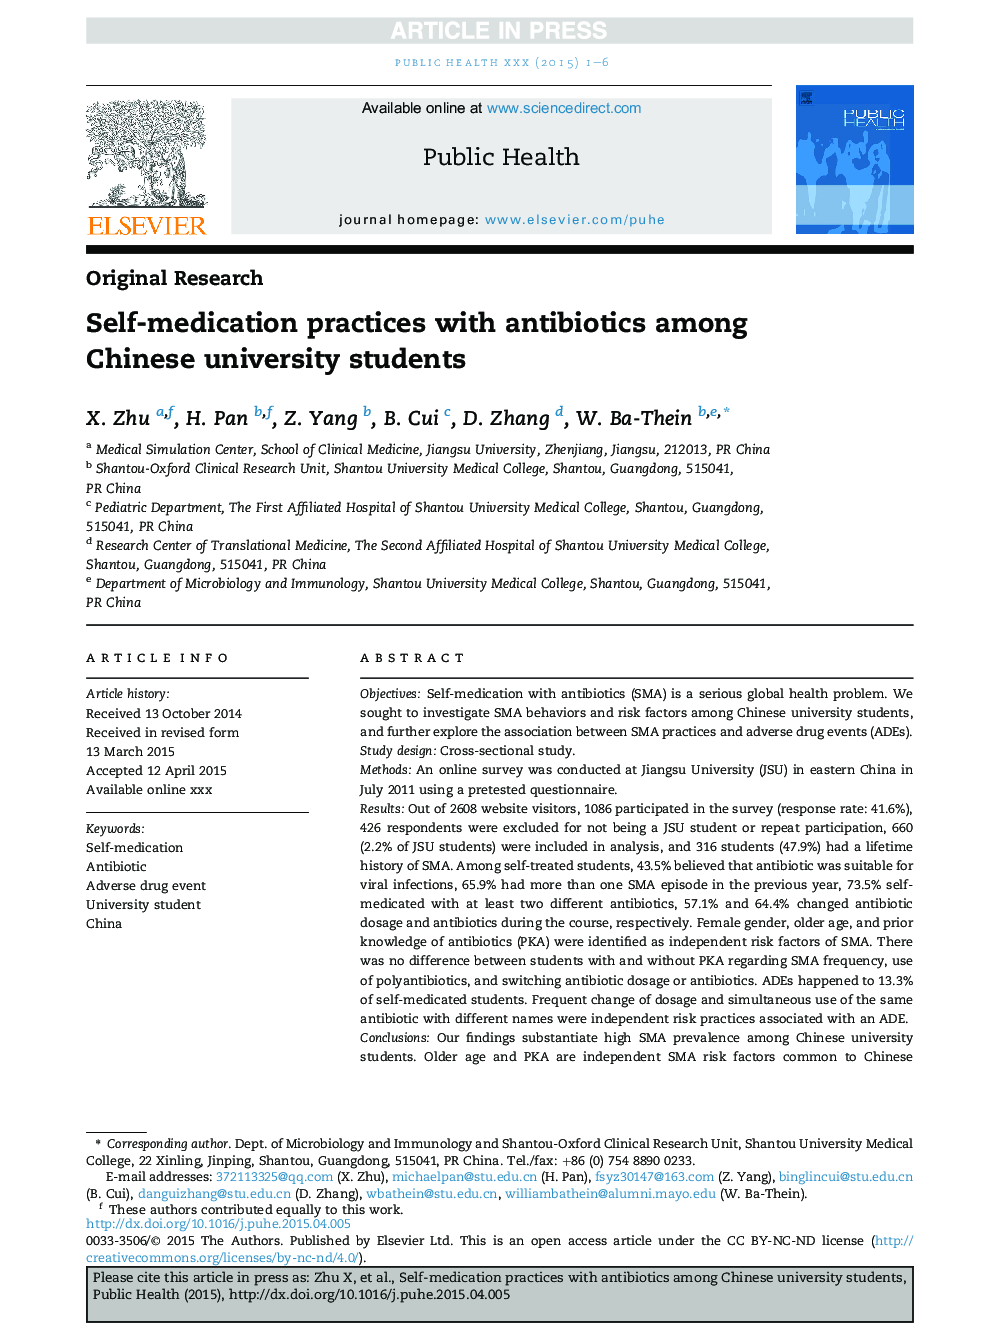 داروهای خودآزاری با آنتی بیوتیک در میان دانشجویان دانشگاه چینی 